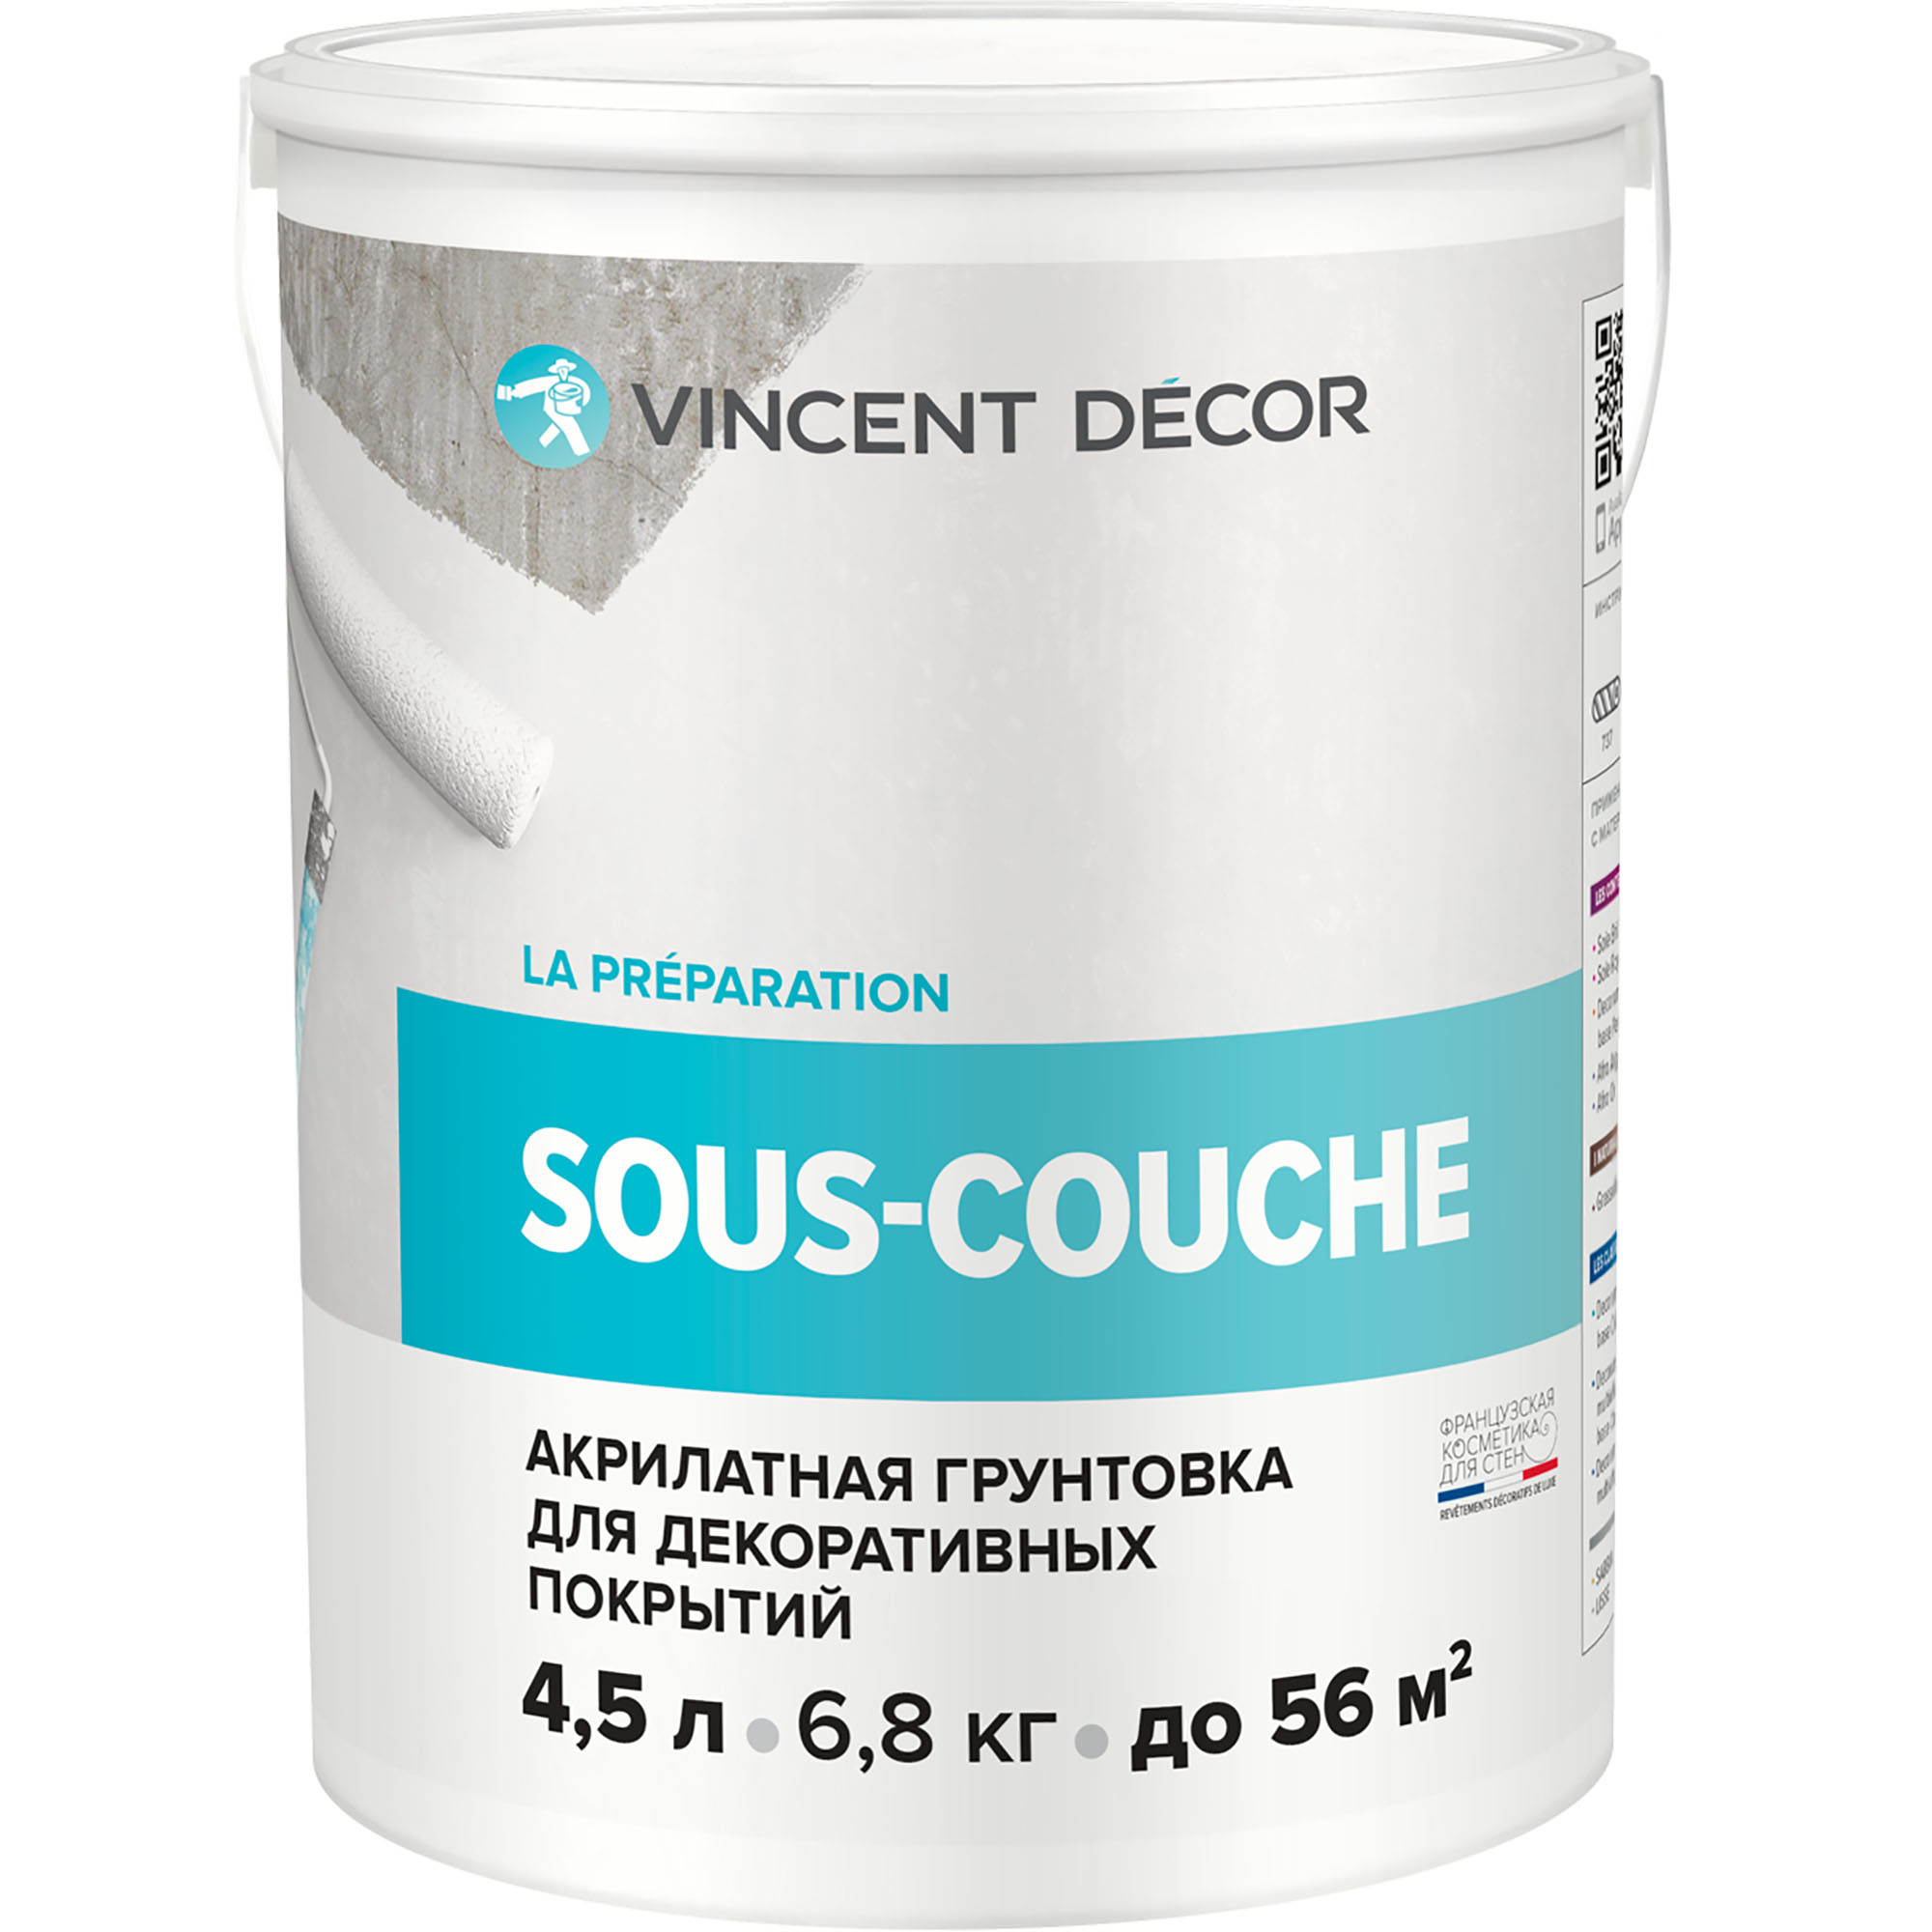 Грунтовка для декоративных покрытий Vincent Decor Sous-couche 4,5 л грунтовка vincent g 2 конт4 кг акрилатная 096 011